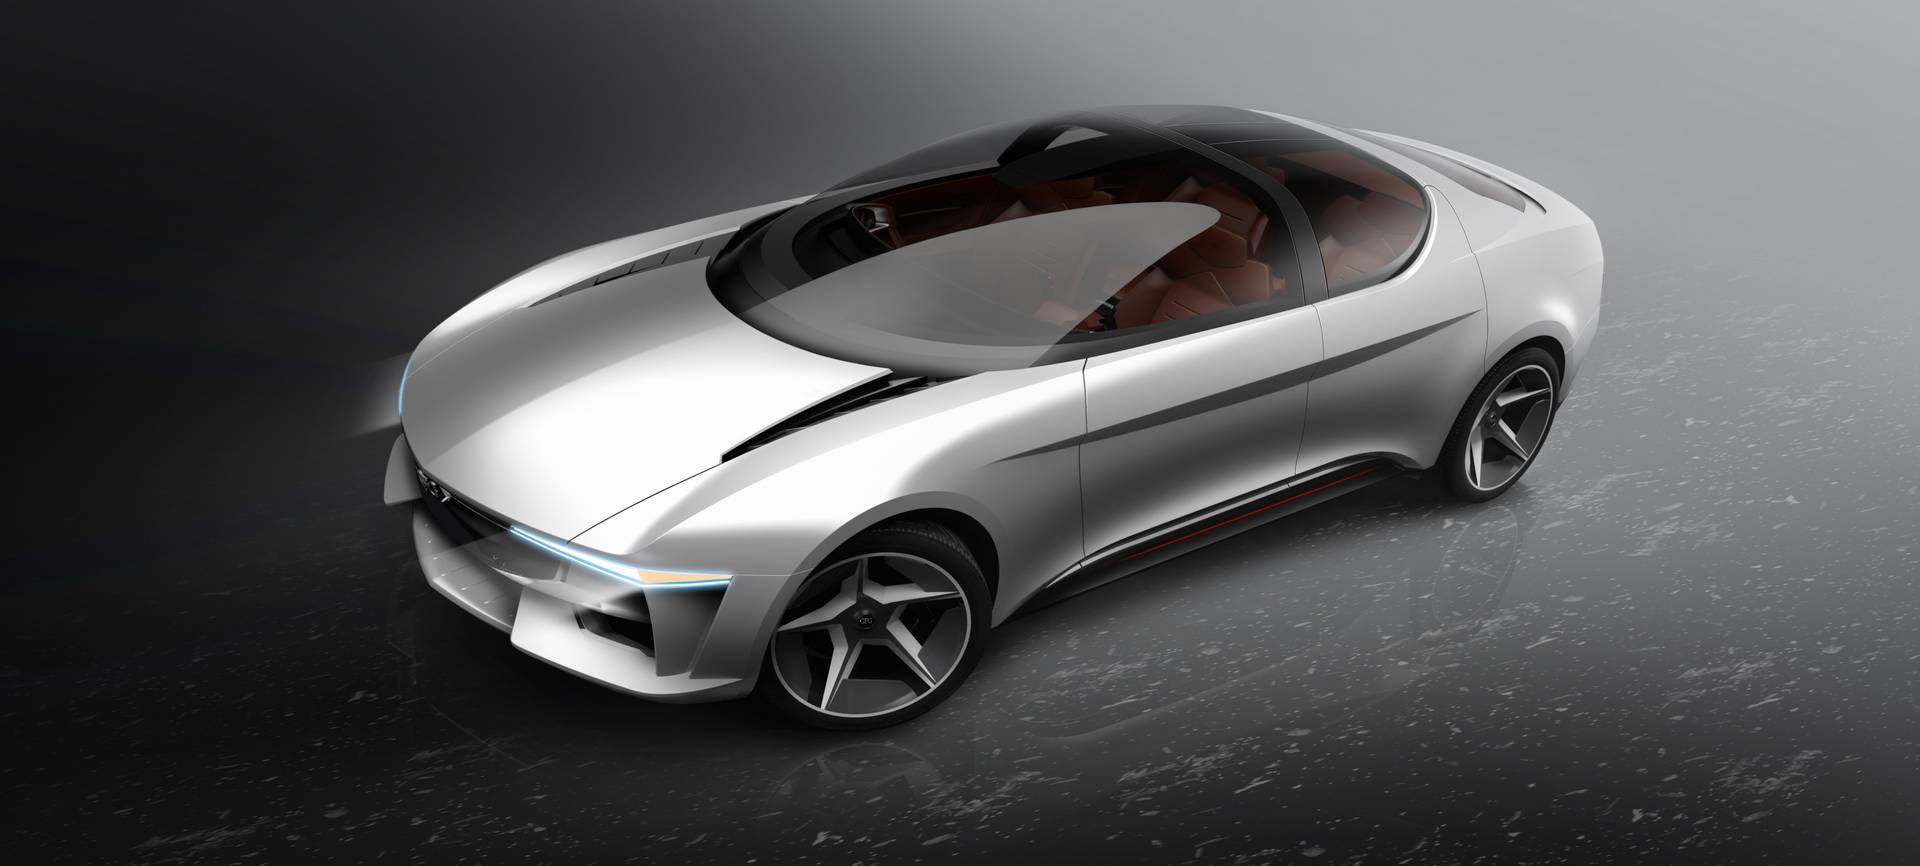 GFG Style and Envision представил новый электрический концептуальный автомобиль на Женевском автосалоне 2018.